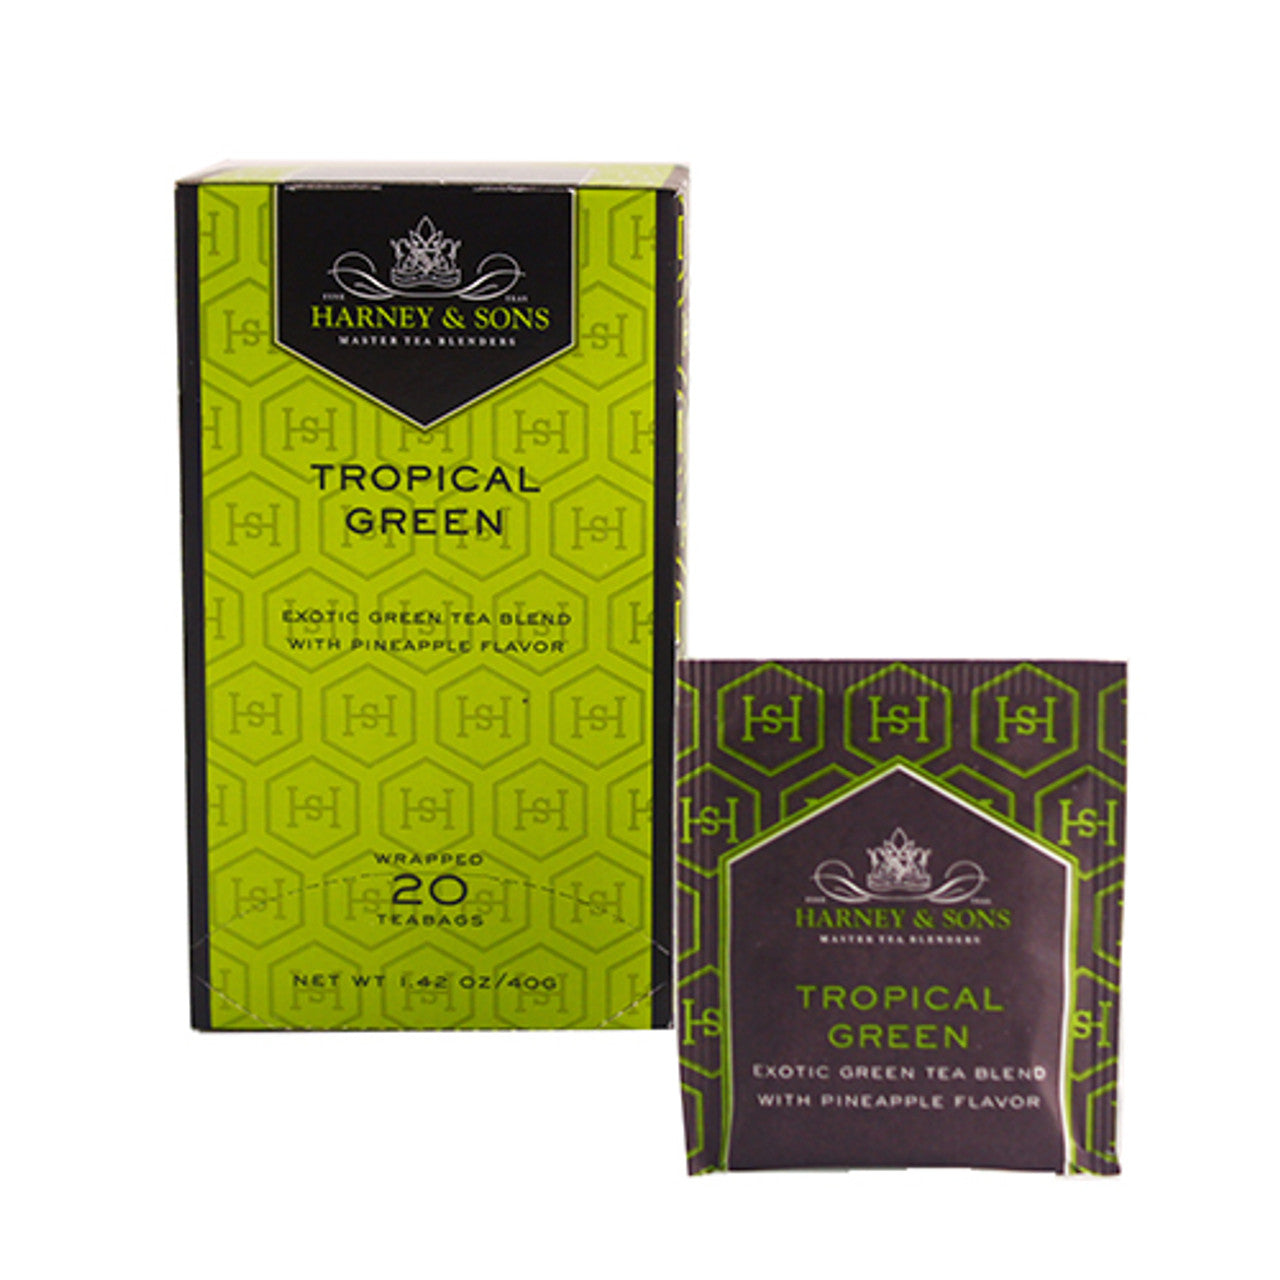 Tropical Green Tea (Box)